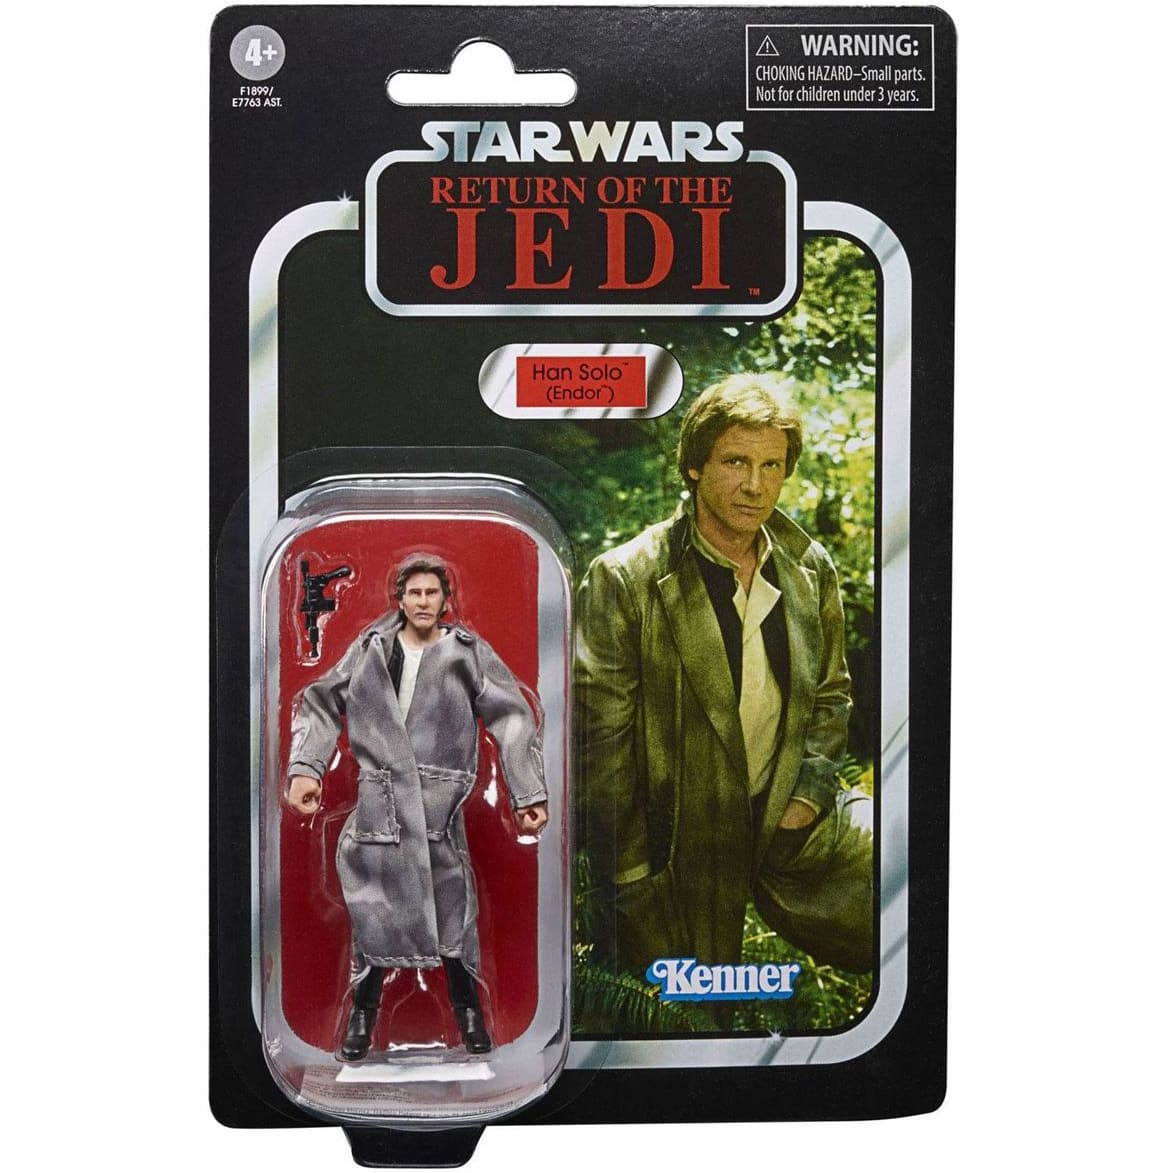  Han Solo Endor - Star Wars (Kenner)